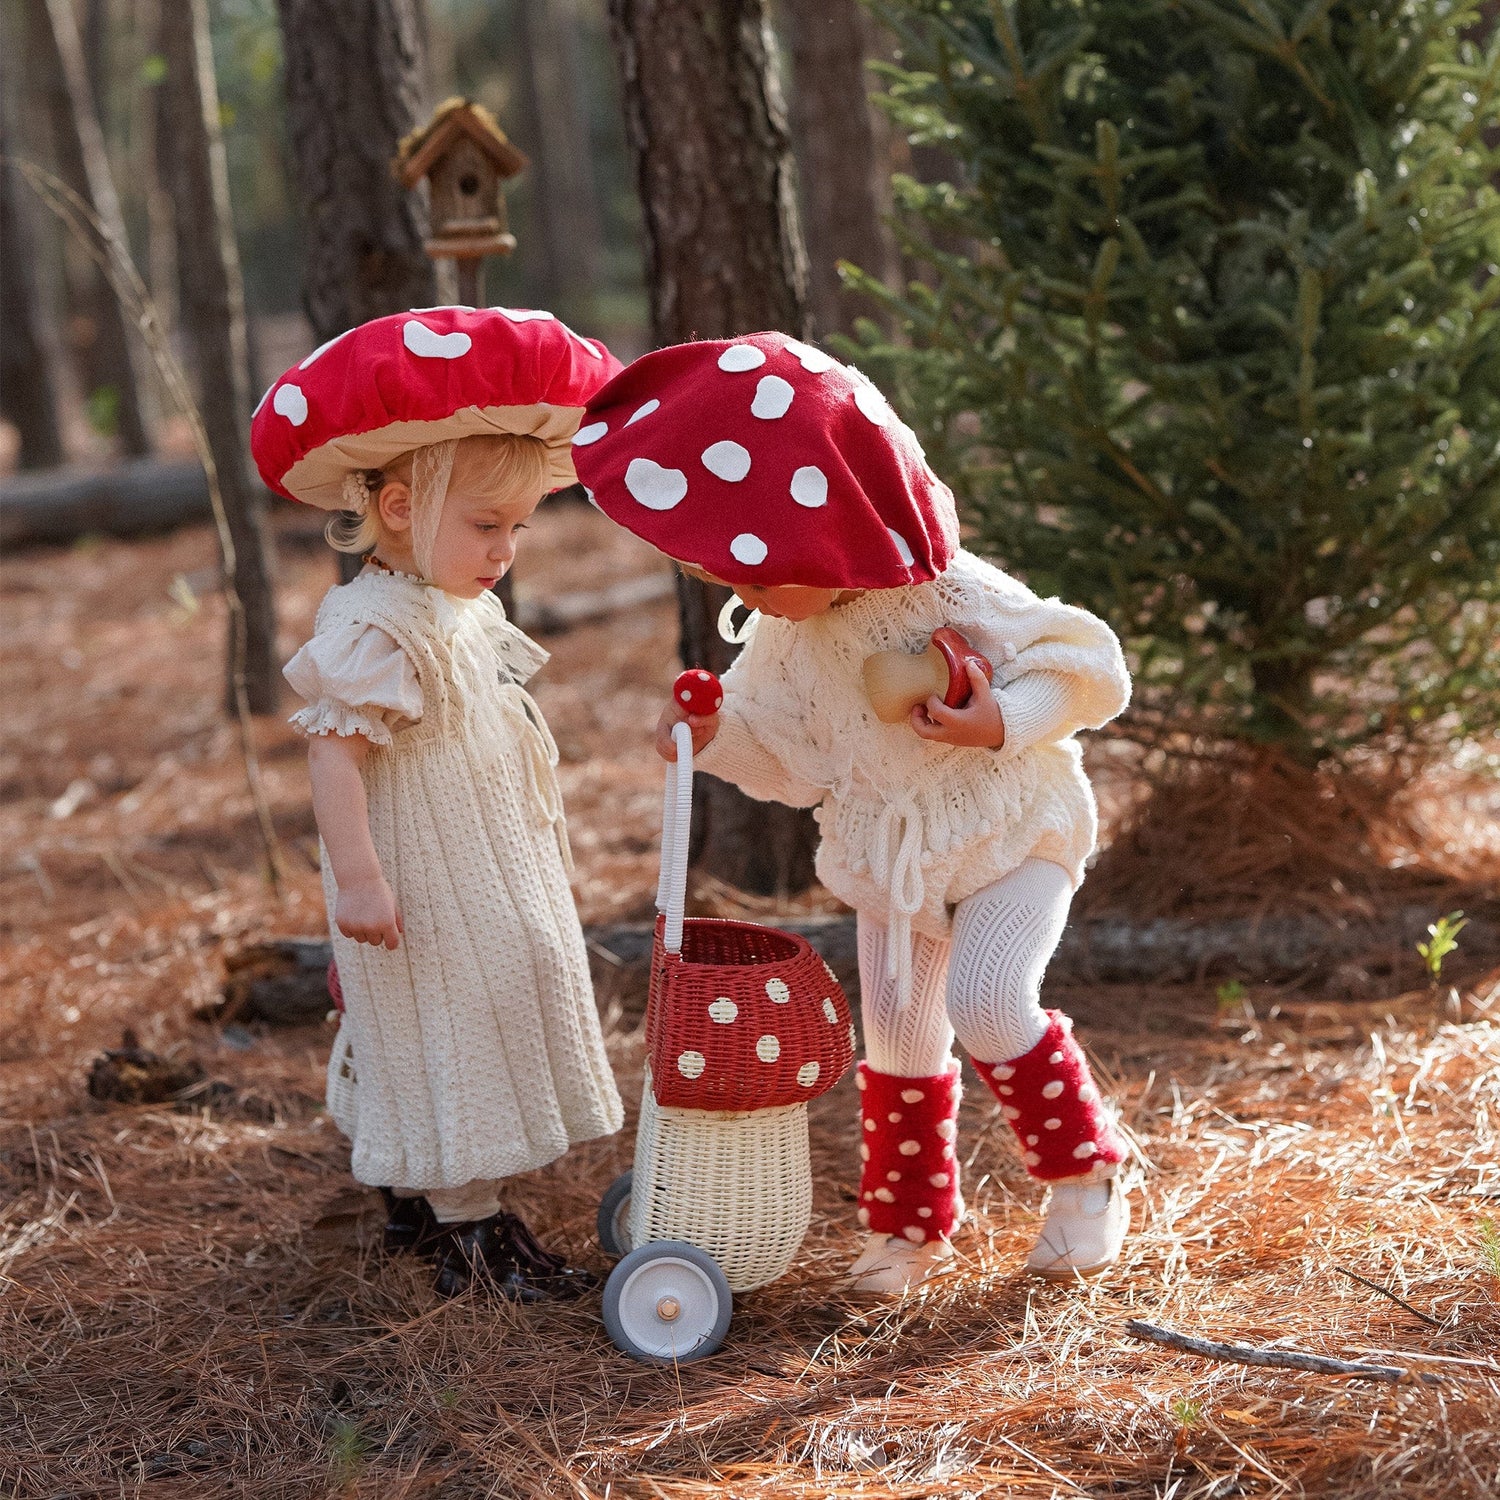 Olli Ella Rattan Rattan Mushroom Luggy (Red) by Olli Ella Olli Ella Red & White Rattan Mushroom Luggy  I Rattan Nursery Decor